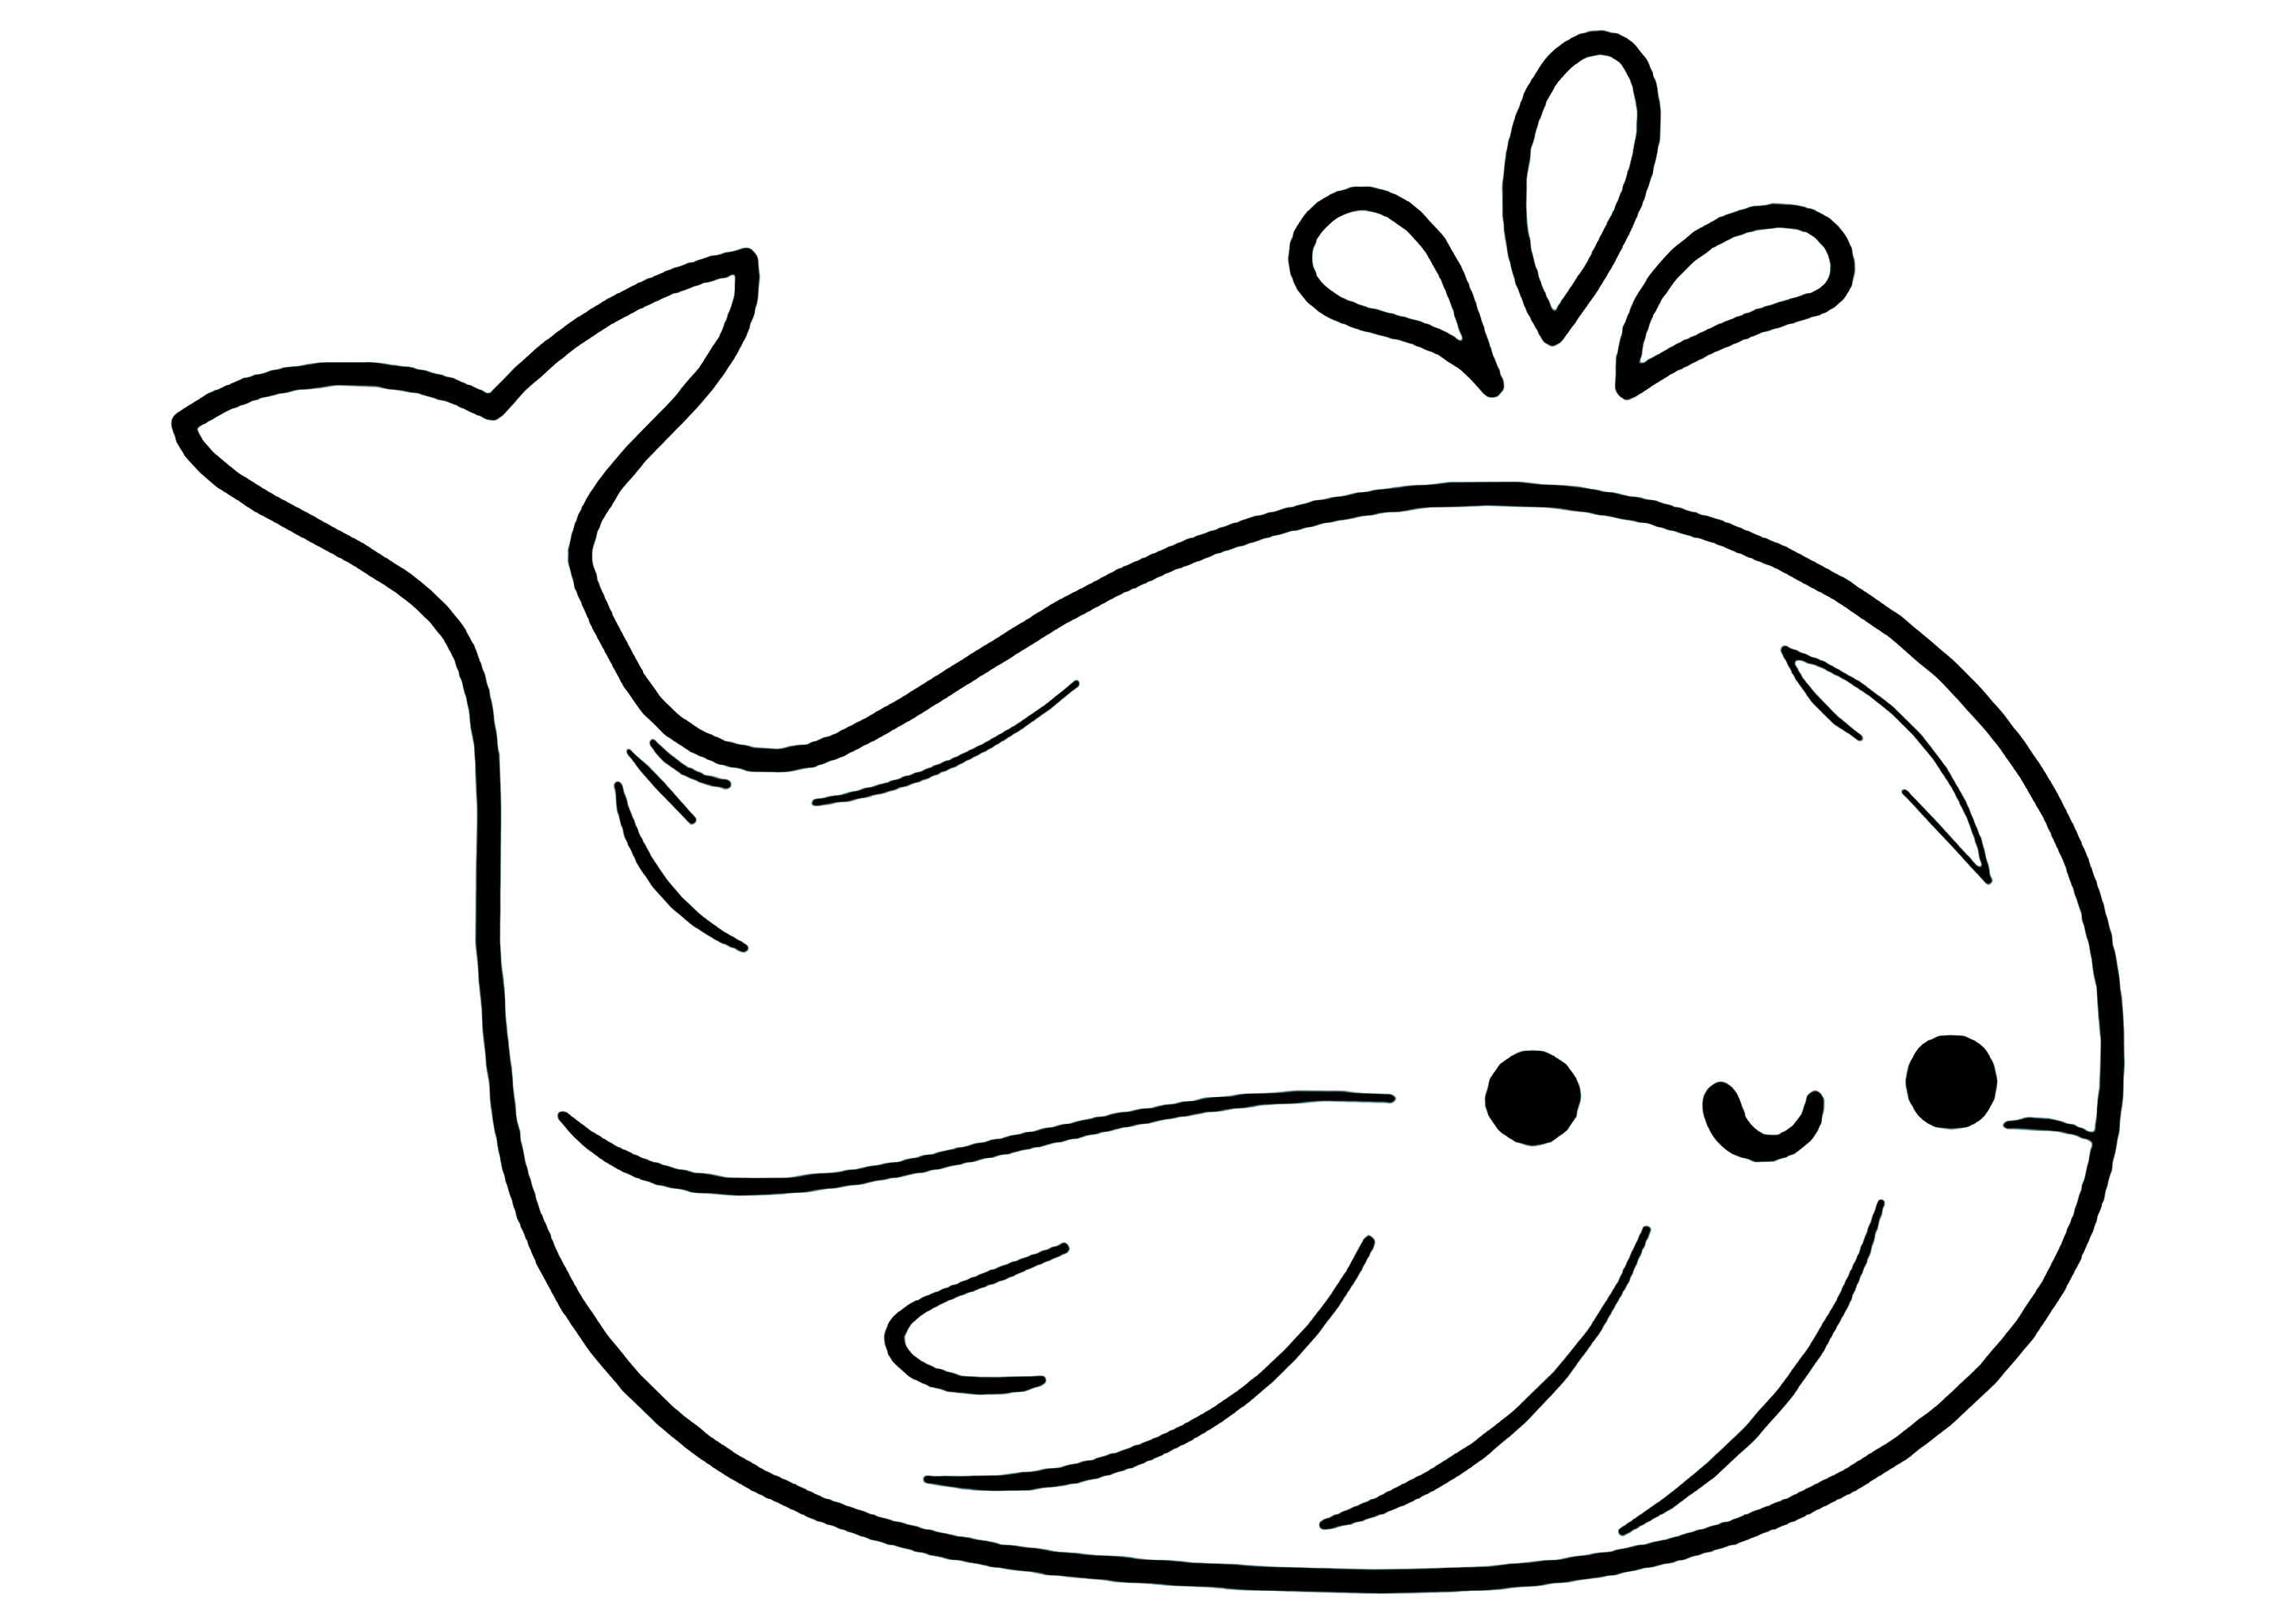 Bonita ballena dibujada en estilo kawaii